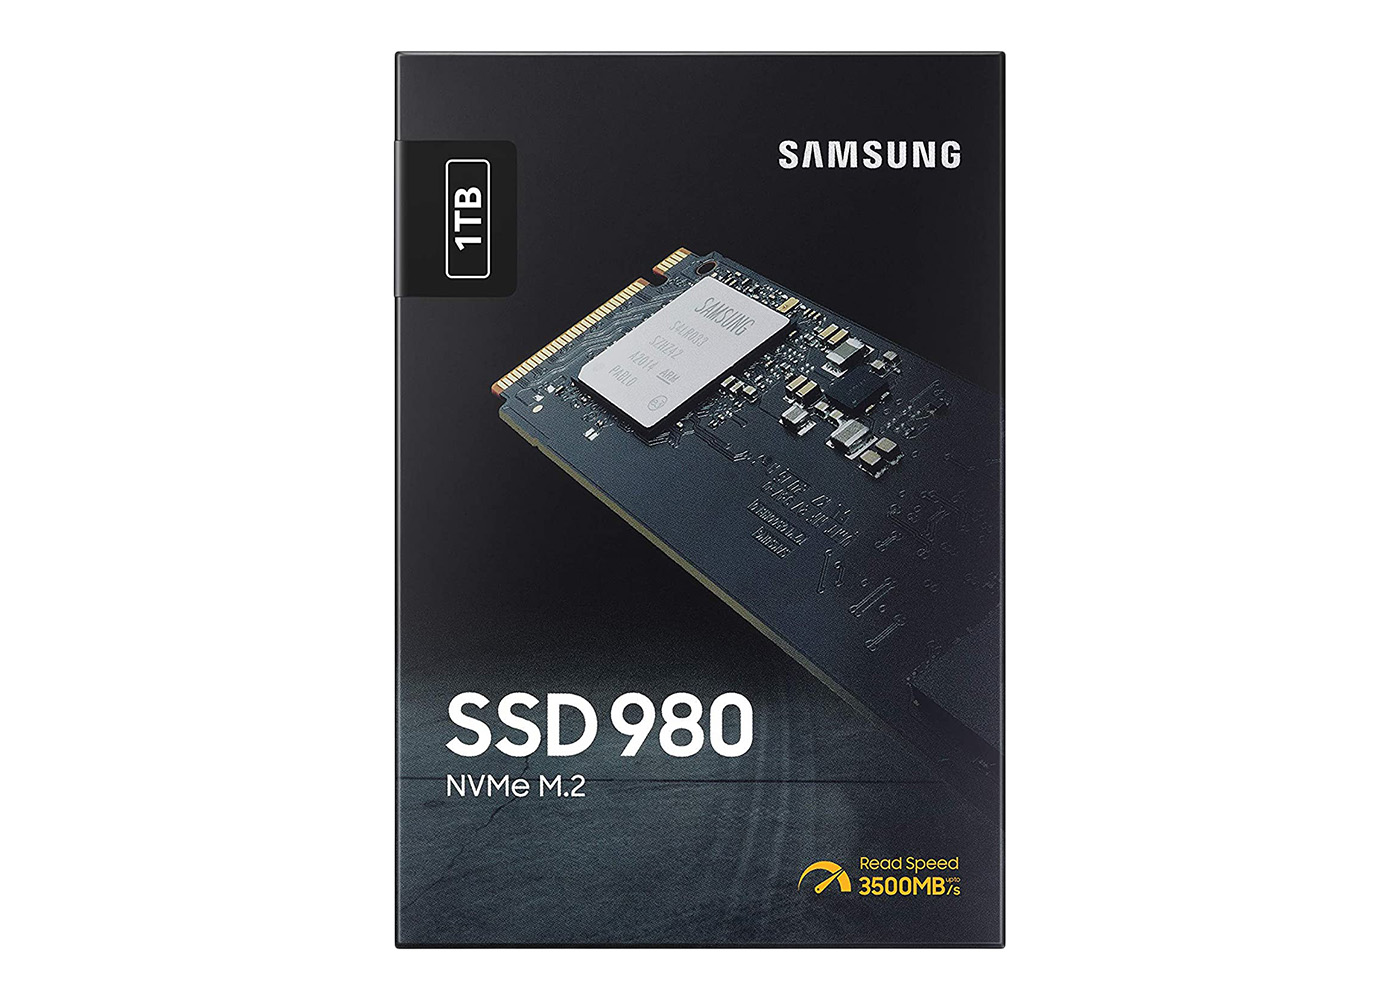 Samsung 980 PCIe 3.0 NVMe 1TB SSD MZ-V8V1T0B/AM - US